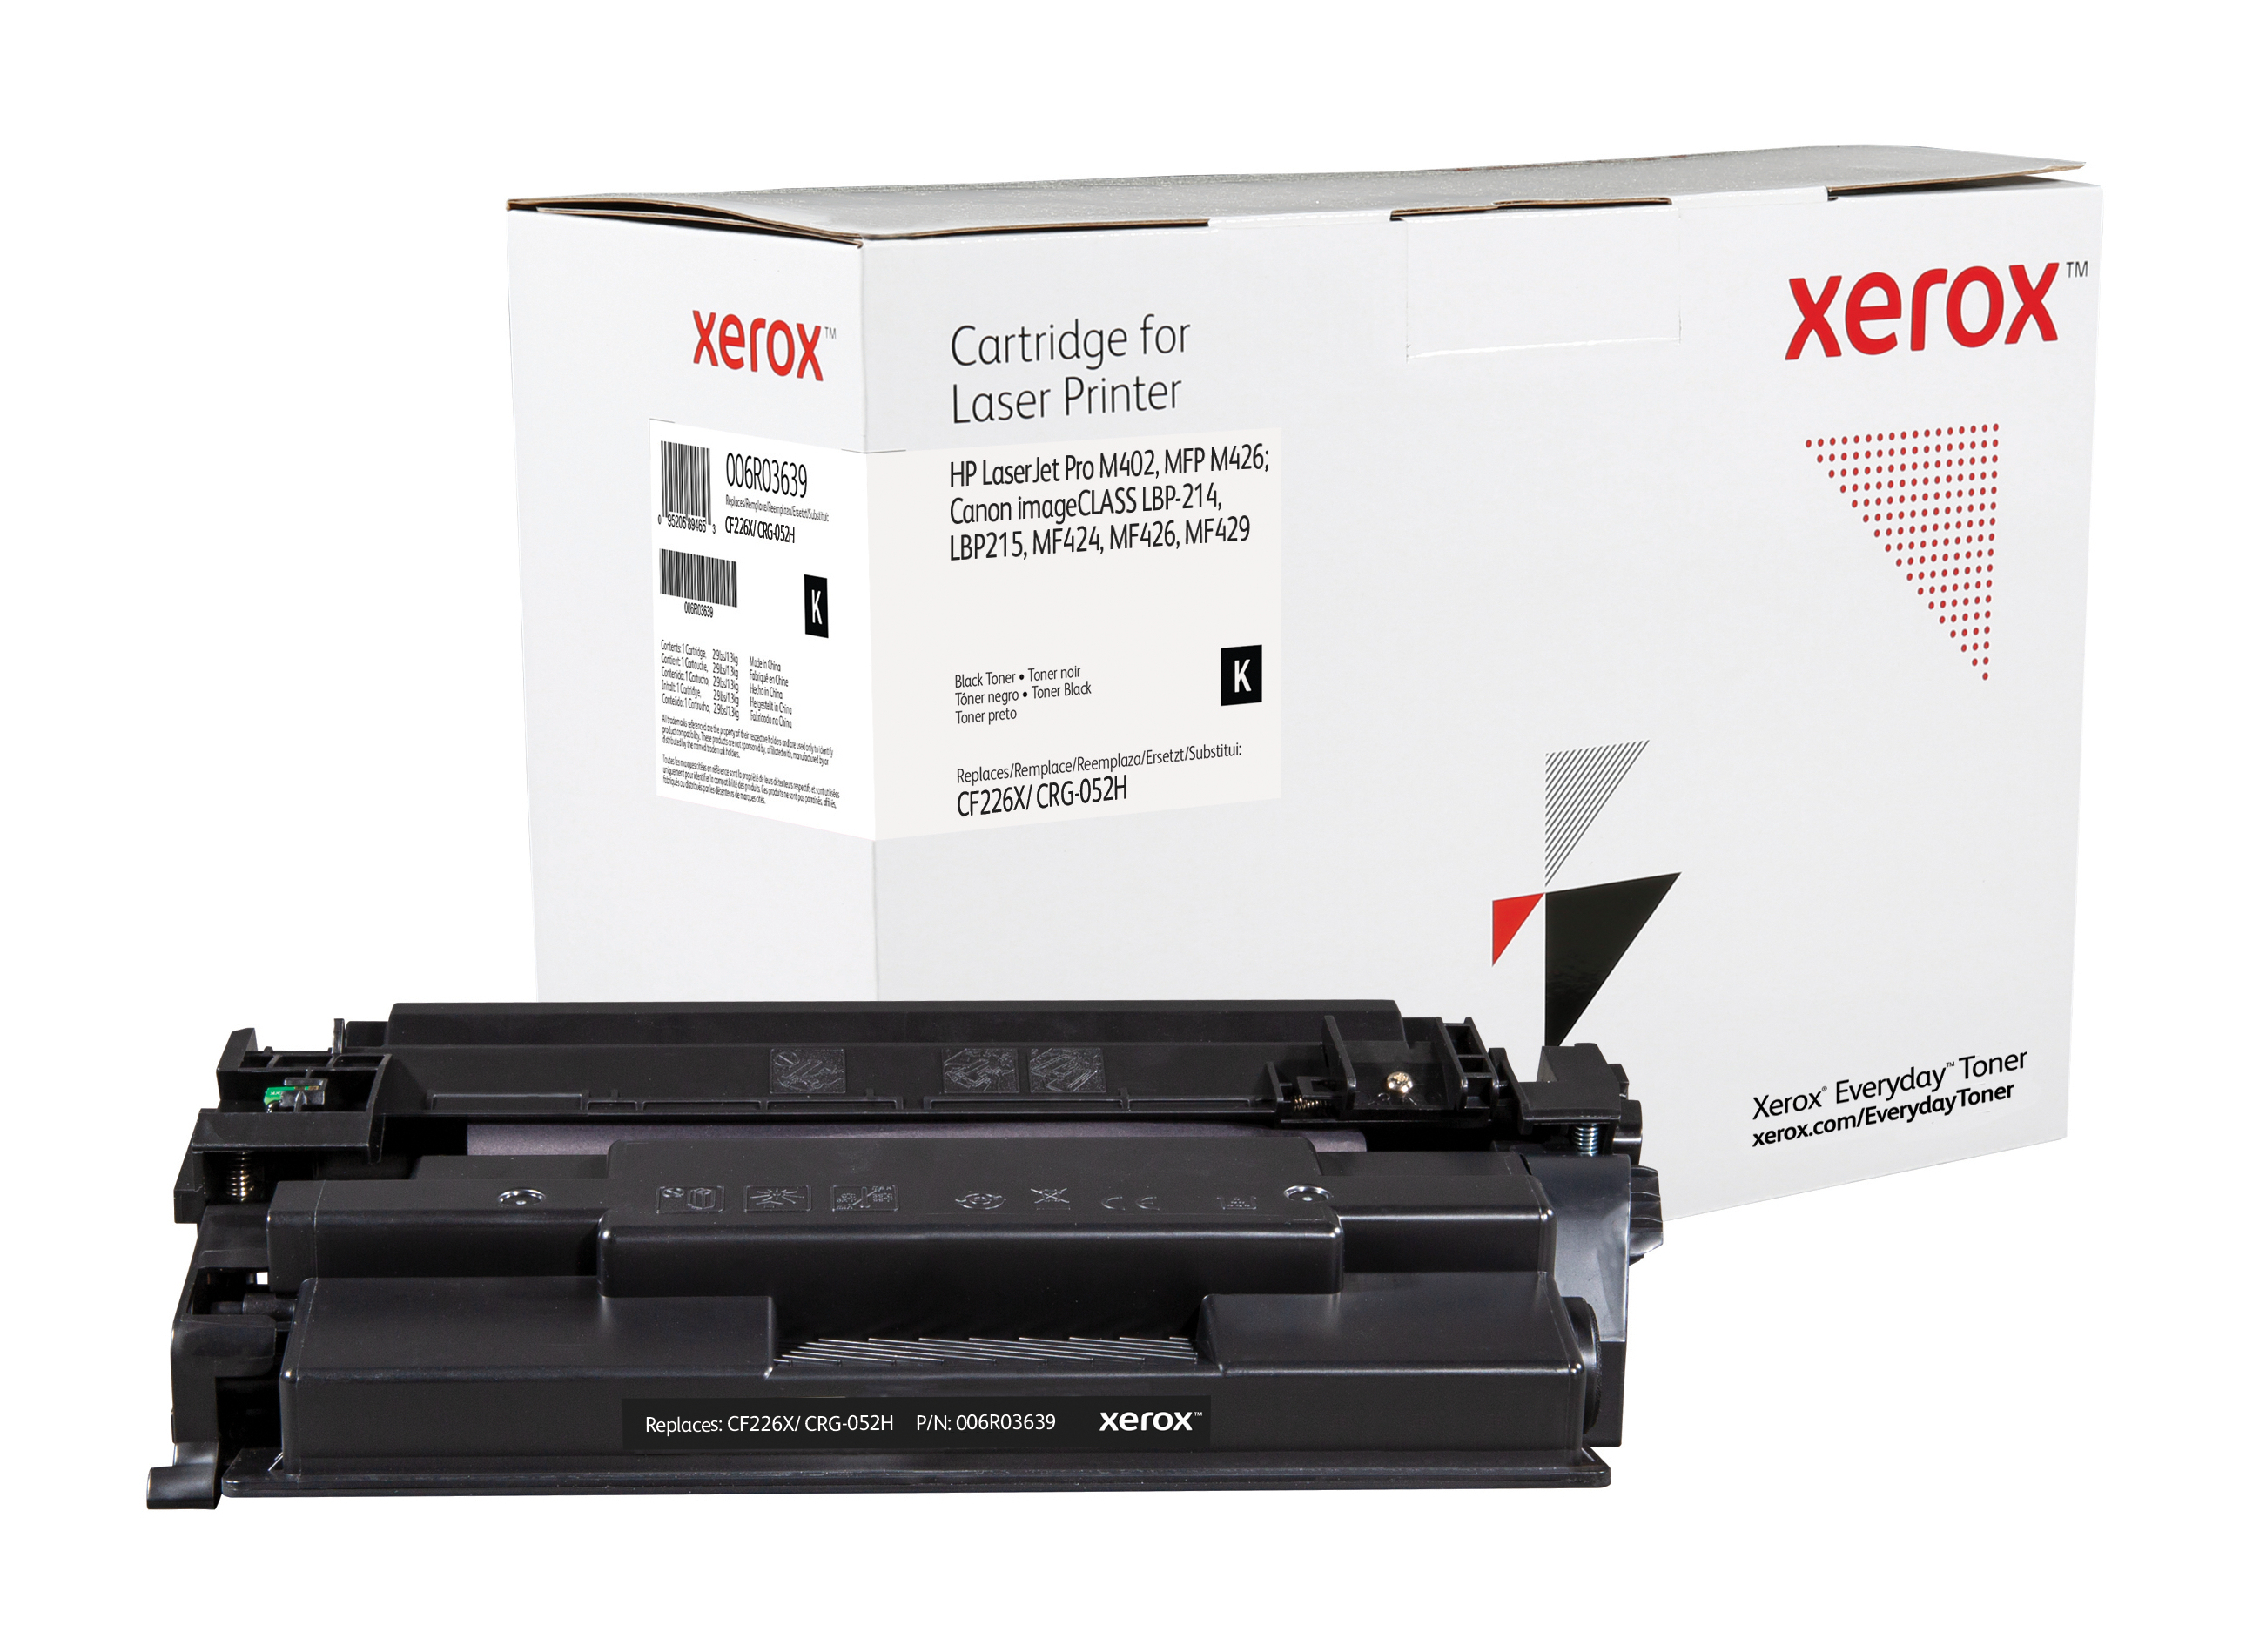 Xerox 006R03639 - ersetzt CF226X, CTR-052H - Toner schwarz - für ImageCLASS LBP215 MF429; i-SENSYS LBP212 LBP214 LBP215 MF421 MF426 MF429